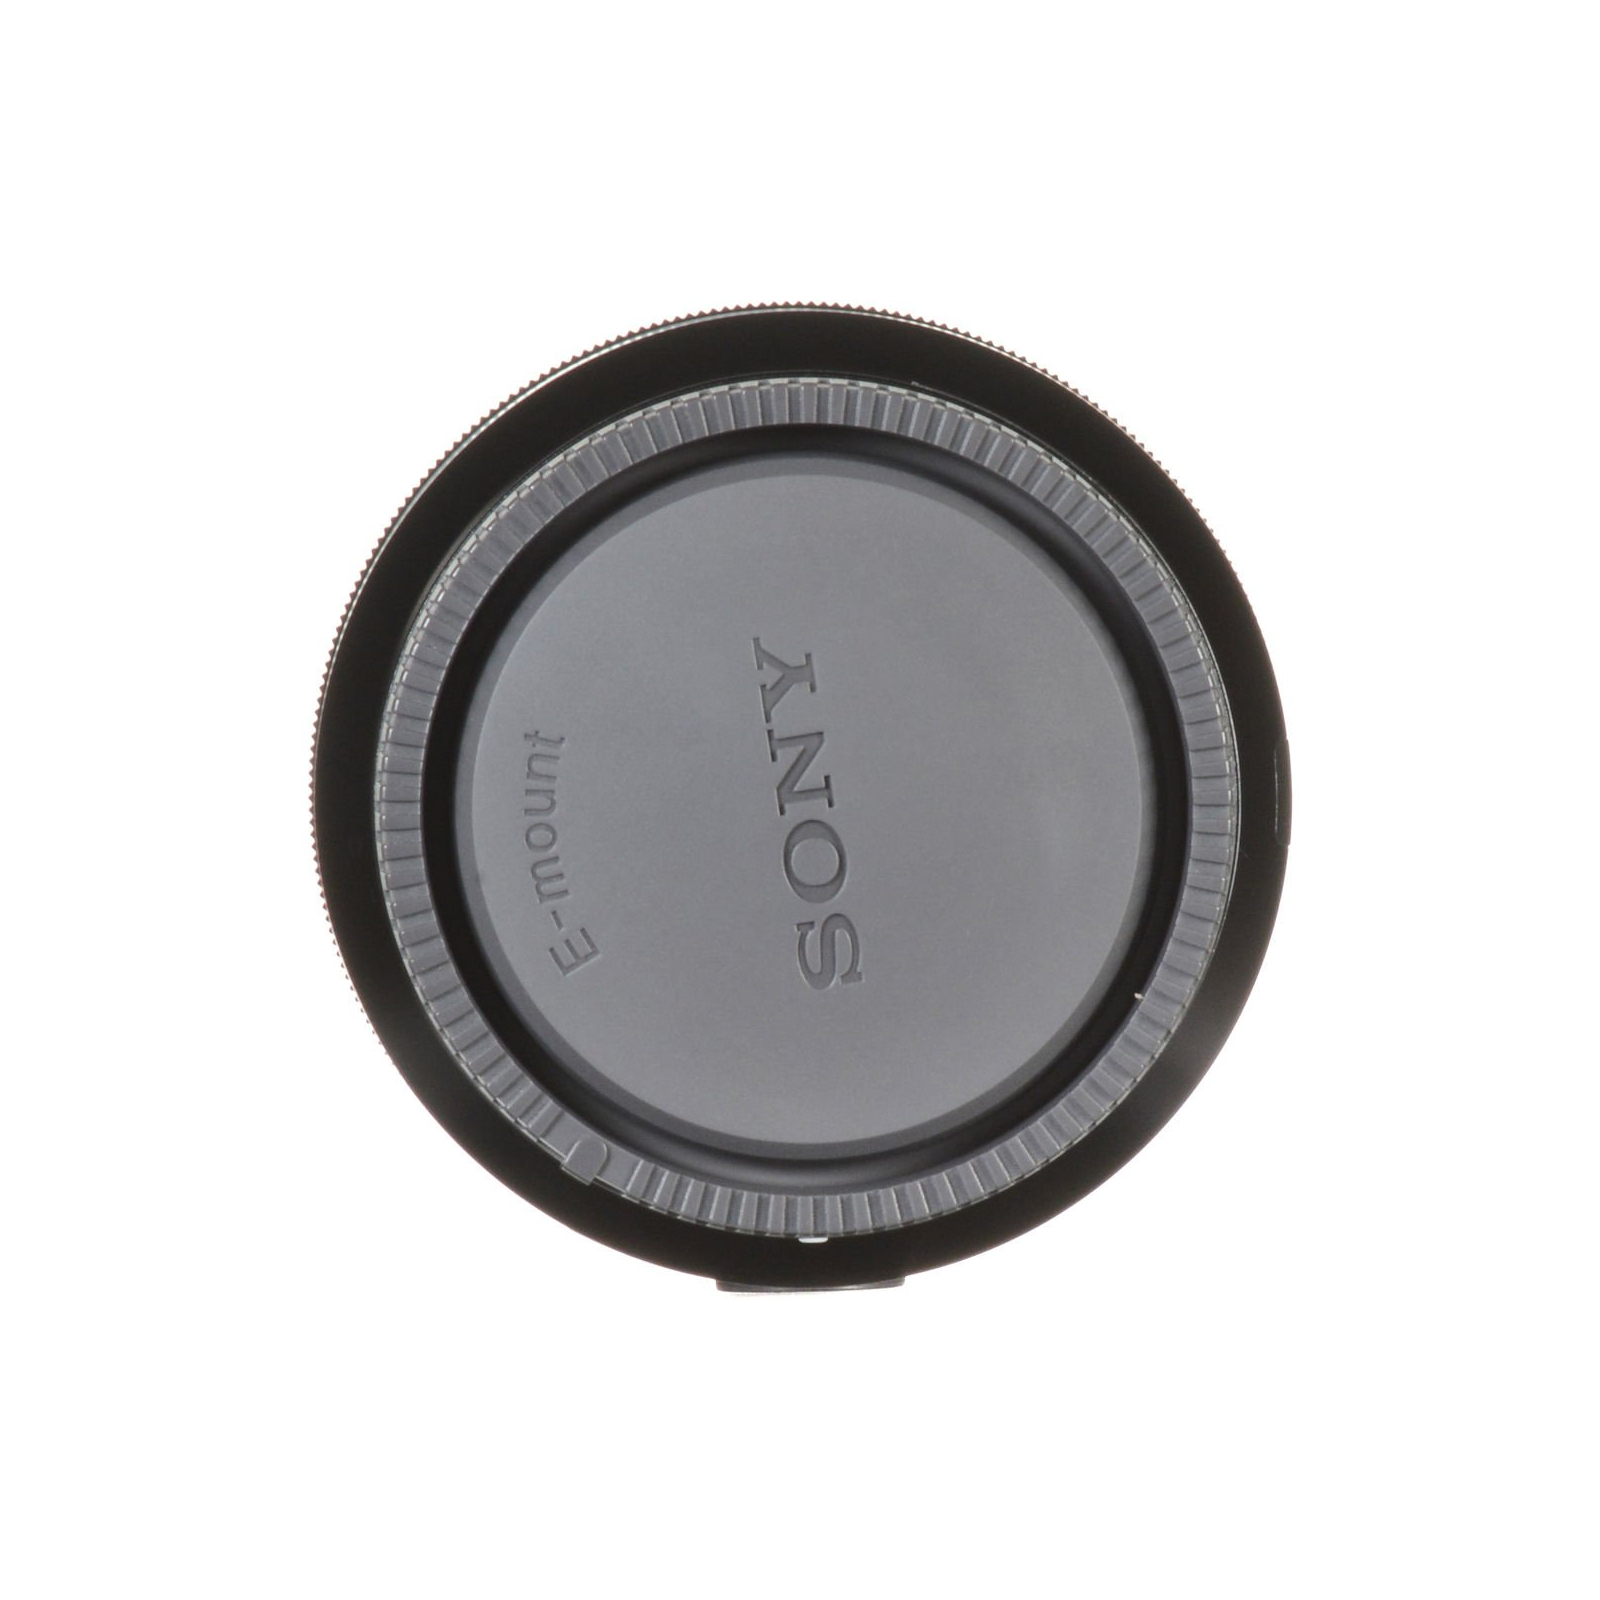 Об'єктив Sony 50mm, f/2.8 Macro для камер NEX FF (SEL50M28.SYX) зображення 7